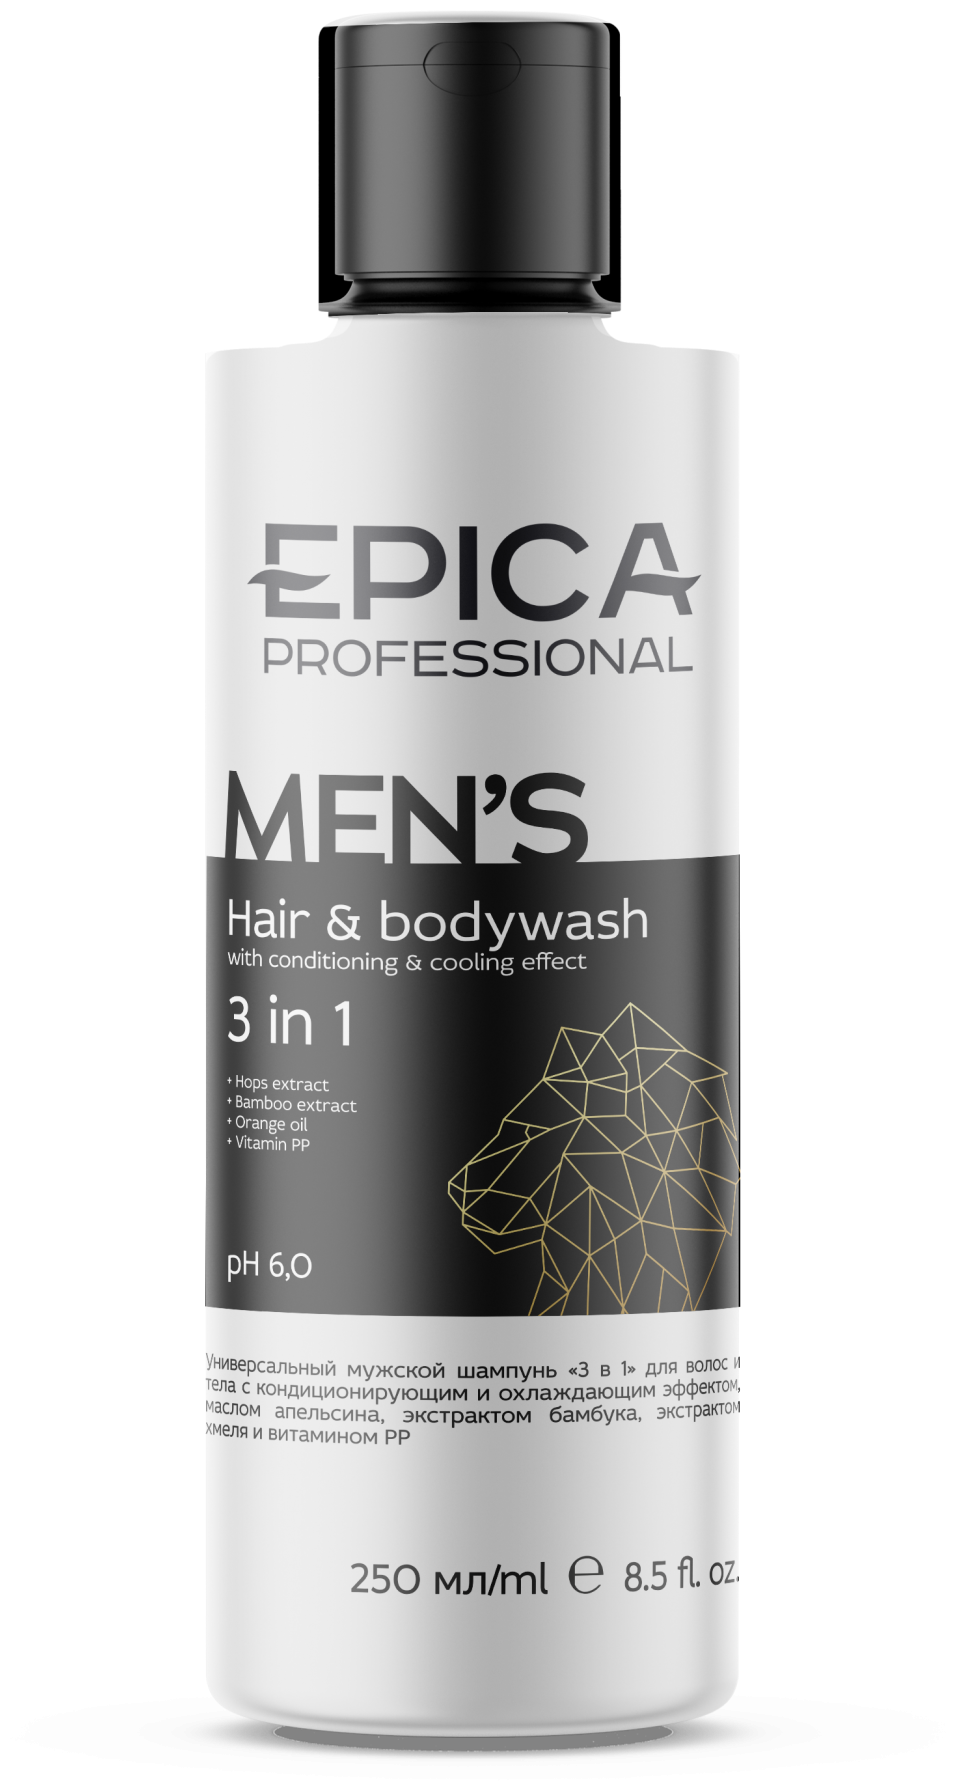 EPICA Men's 3 in 1 Универсальный мужской шампунь для волос и тела с охлаждающим эффектом 250 мл